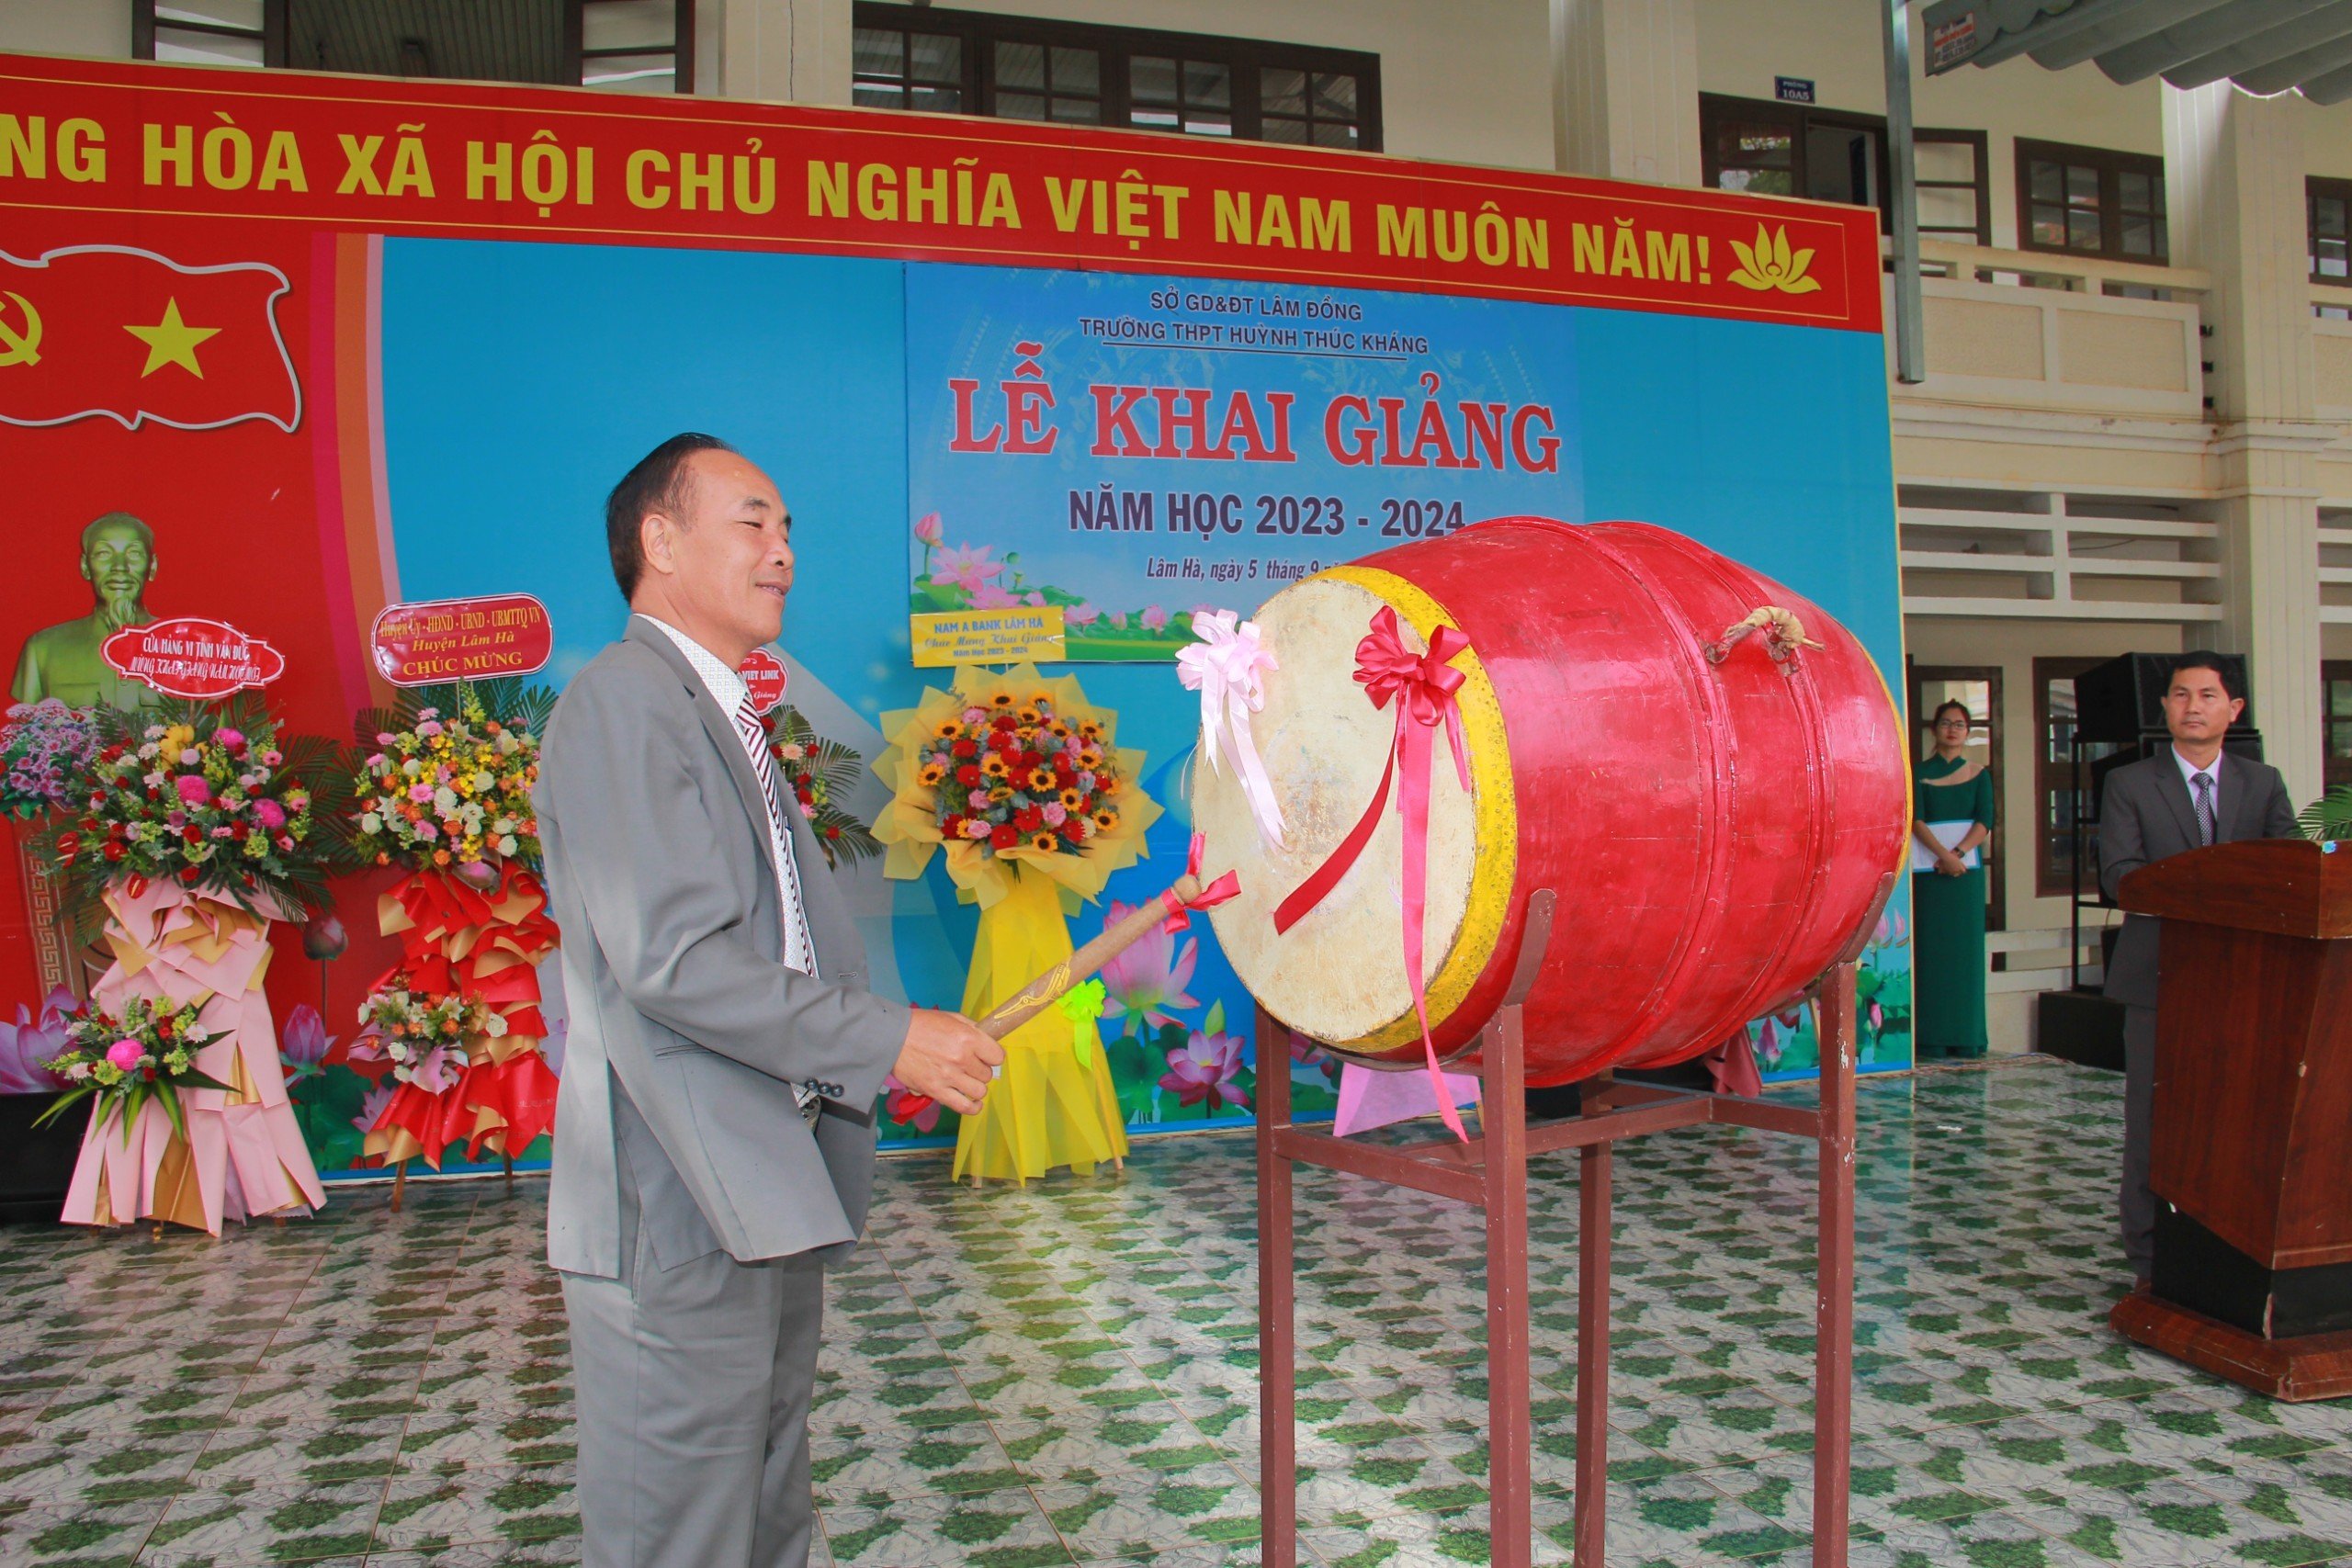 Ông Nguyễn Văn Tình – UV BTV, Trưởng Ban Tuyên giáo Huyện ủy Lâm Hà đánh trống khai giảng năm học 2023 - 2024